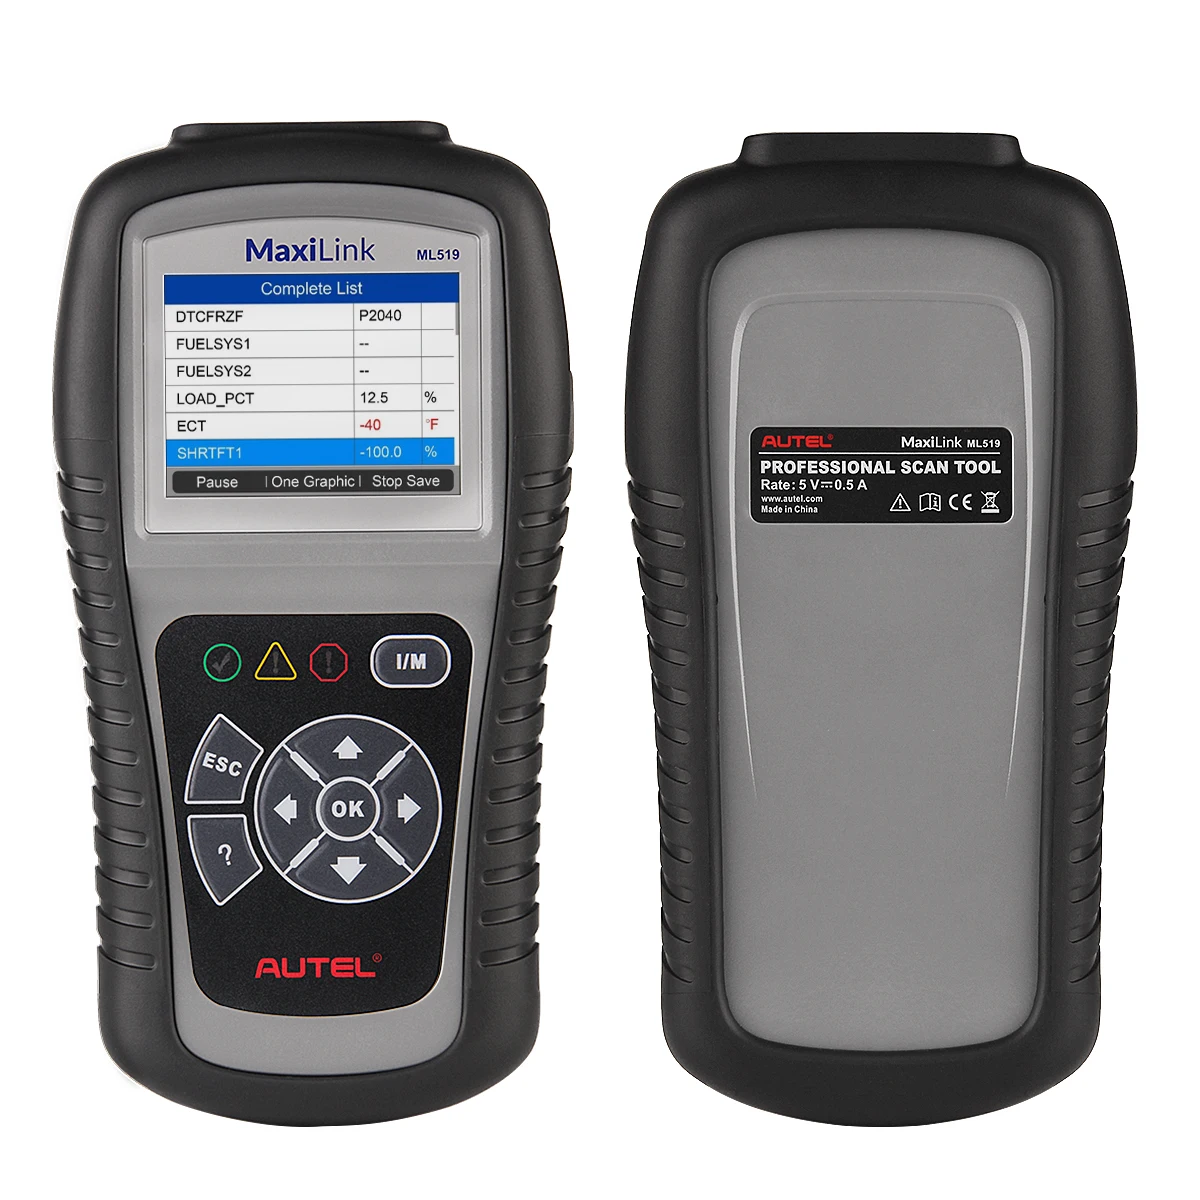 

Autel ML519 automotive OBD2 Scanner Car Diagnostic Tools OBD Code Reader autel scanners AL519 ML519 autel diagnostic tool